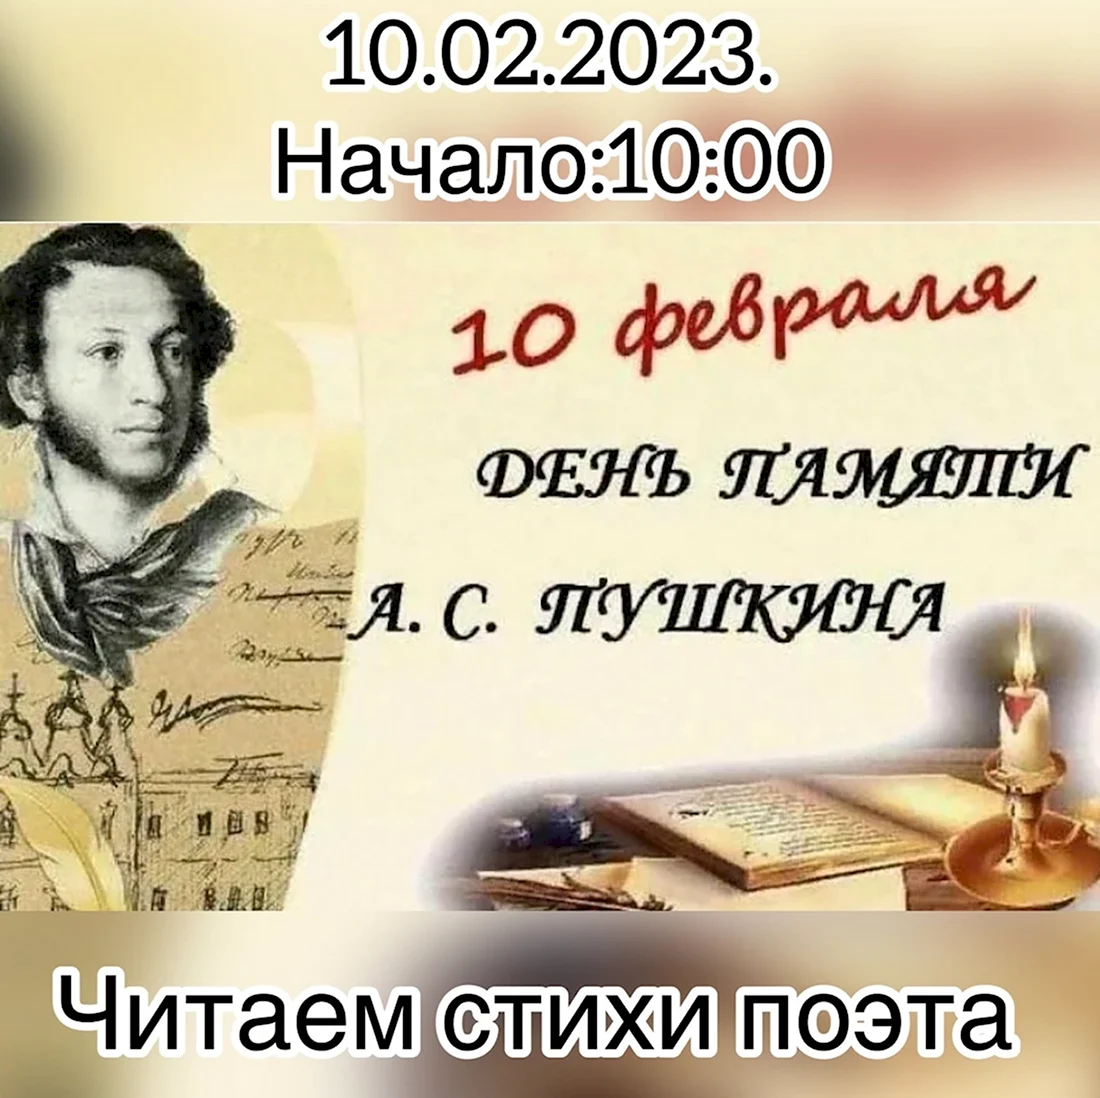 День памяти Пушкина. Открытка, картинка с поздравлением, с праздником